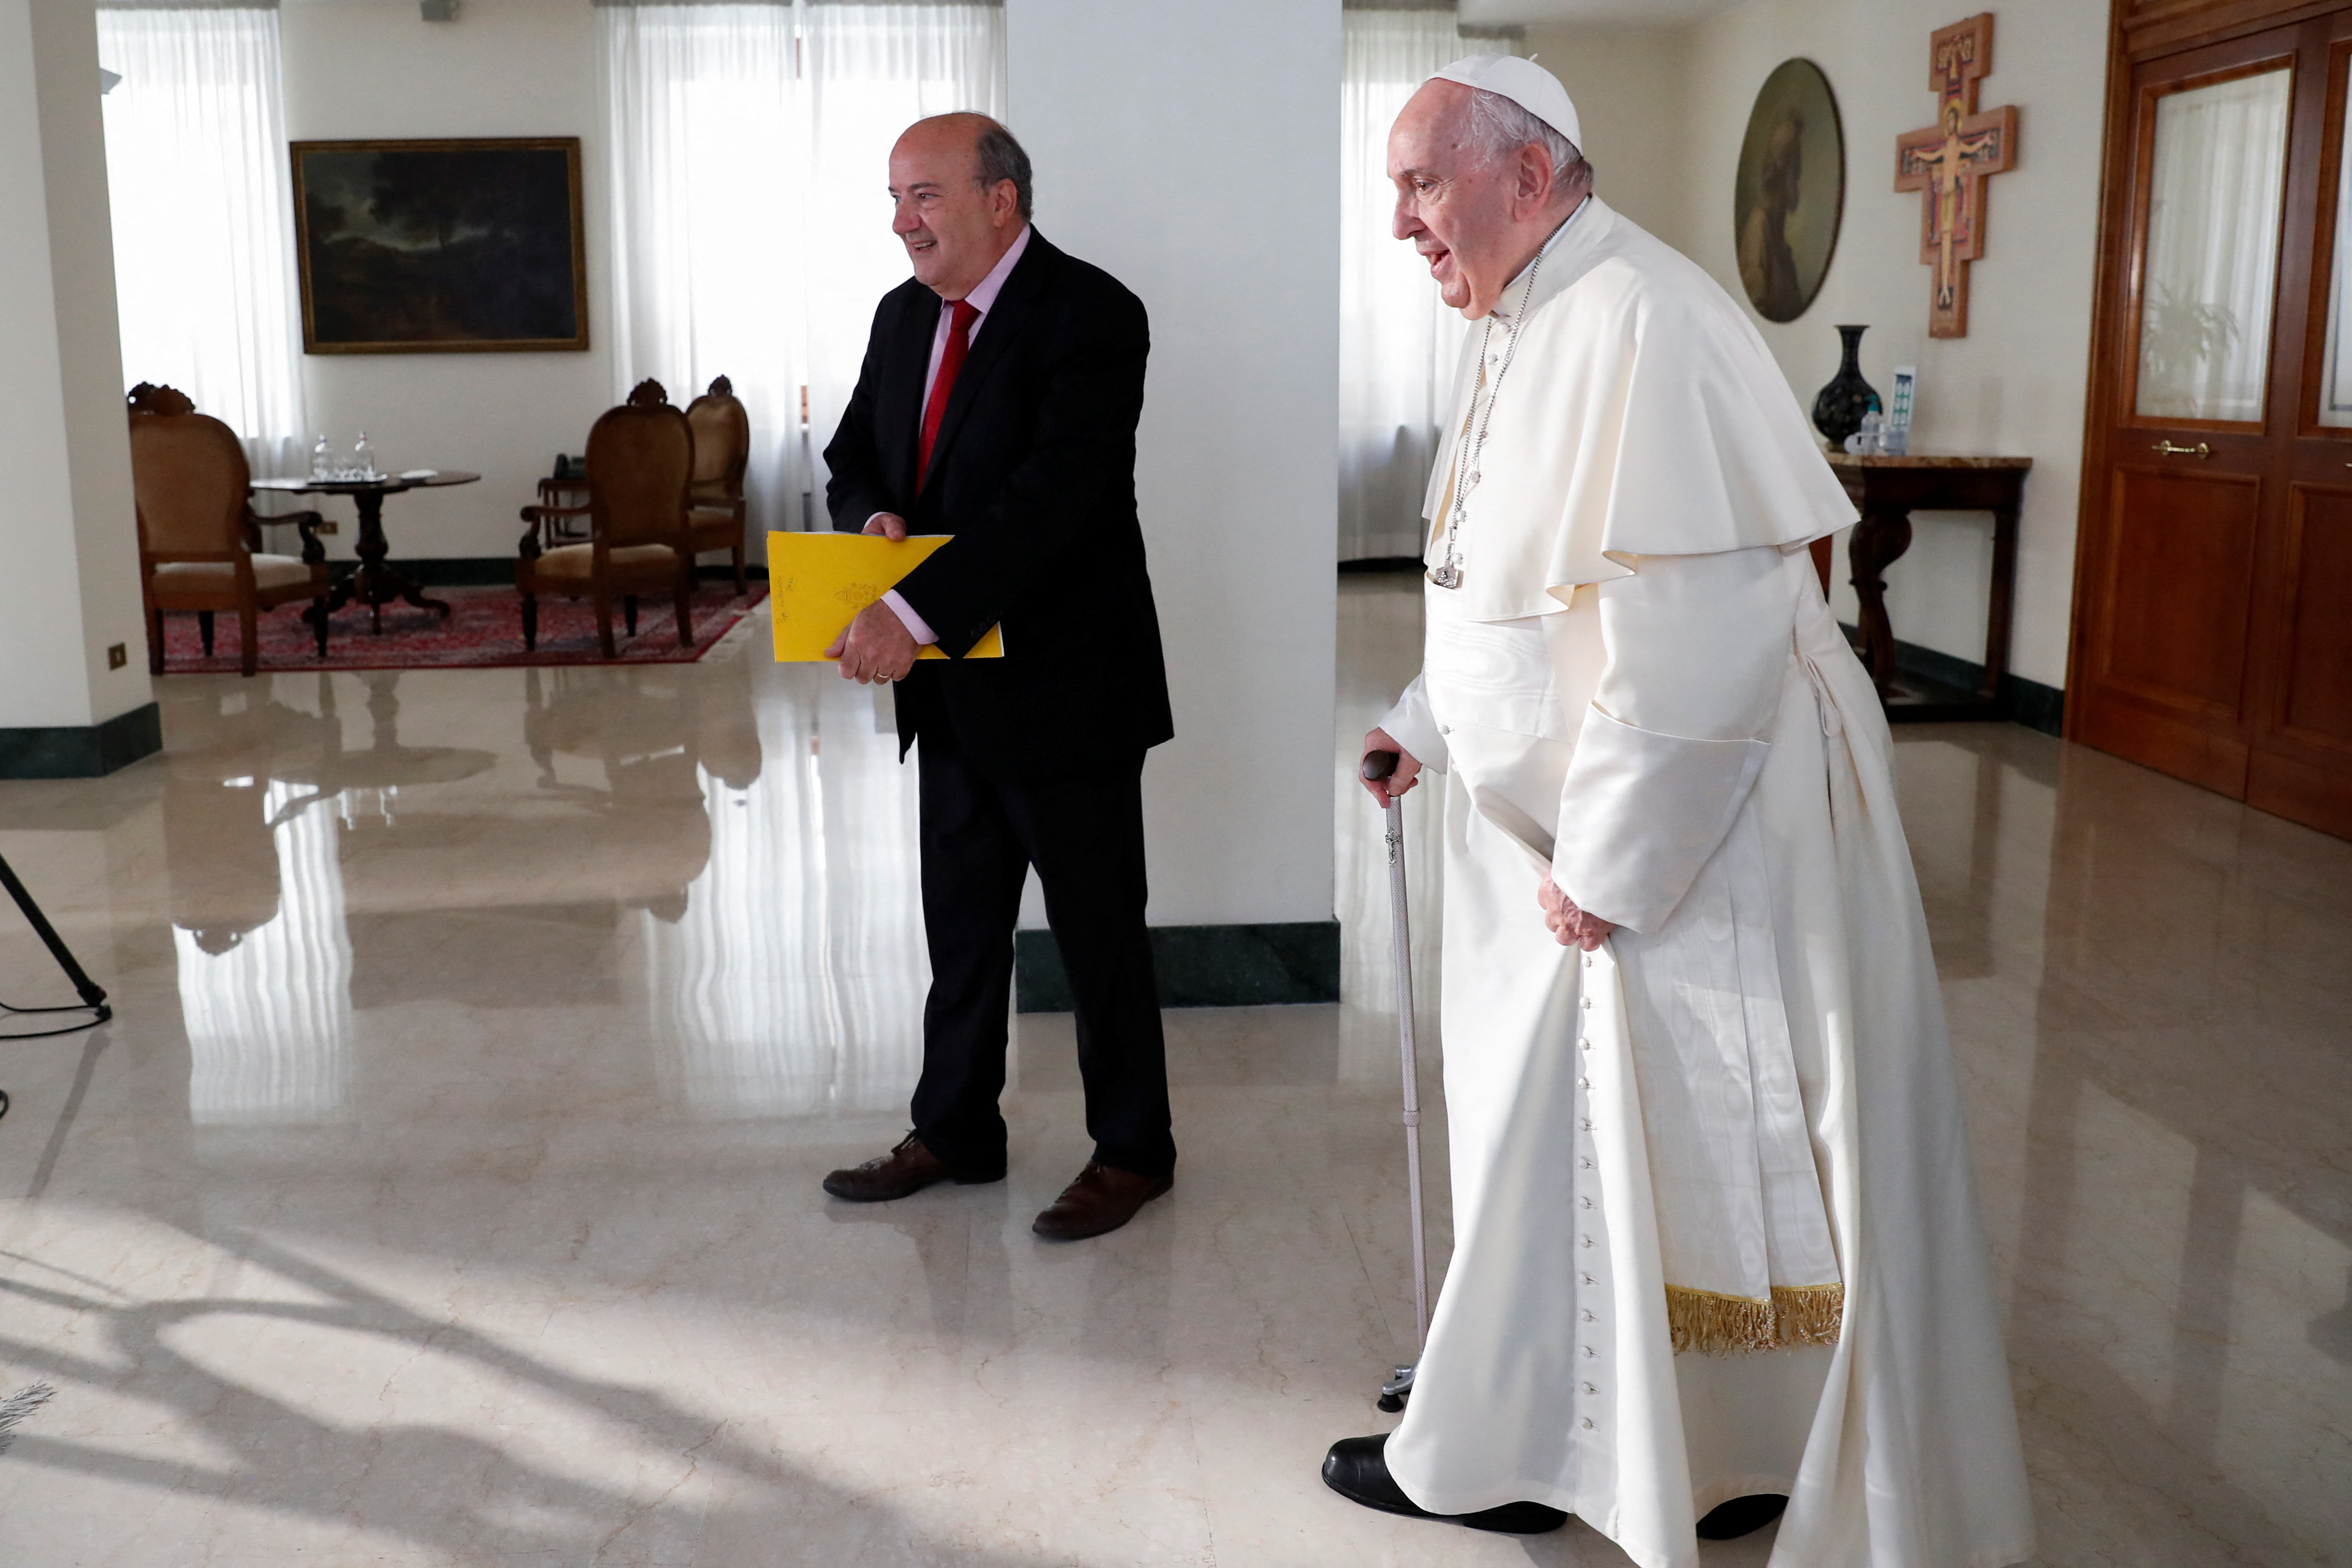 El papa con bastón al llegar a la entrevista (REUTERS/Remo Casilli)